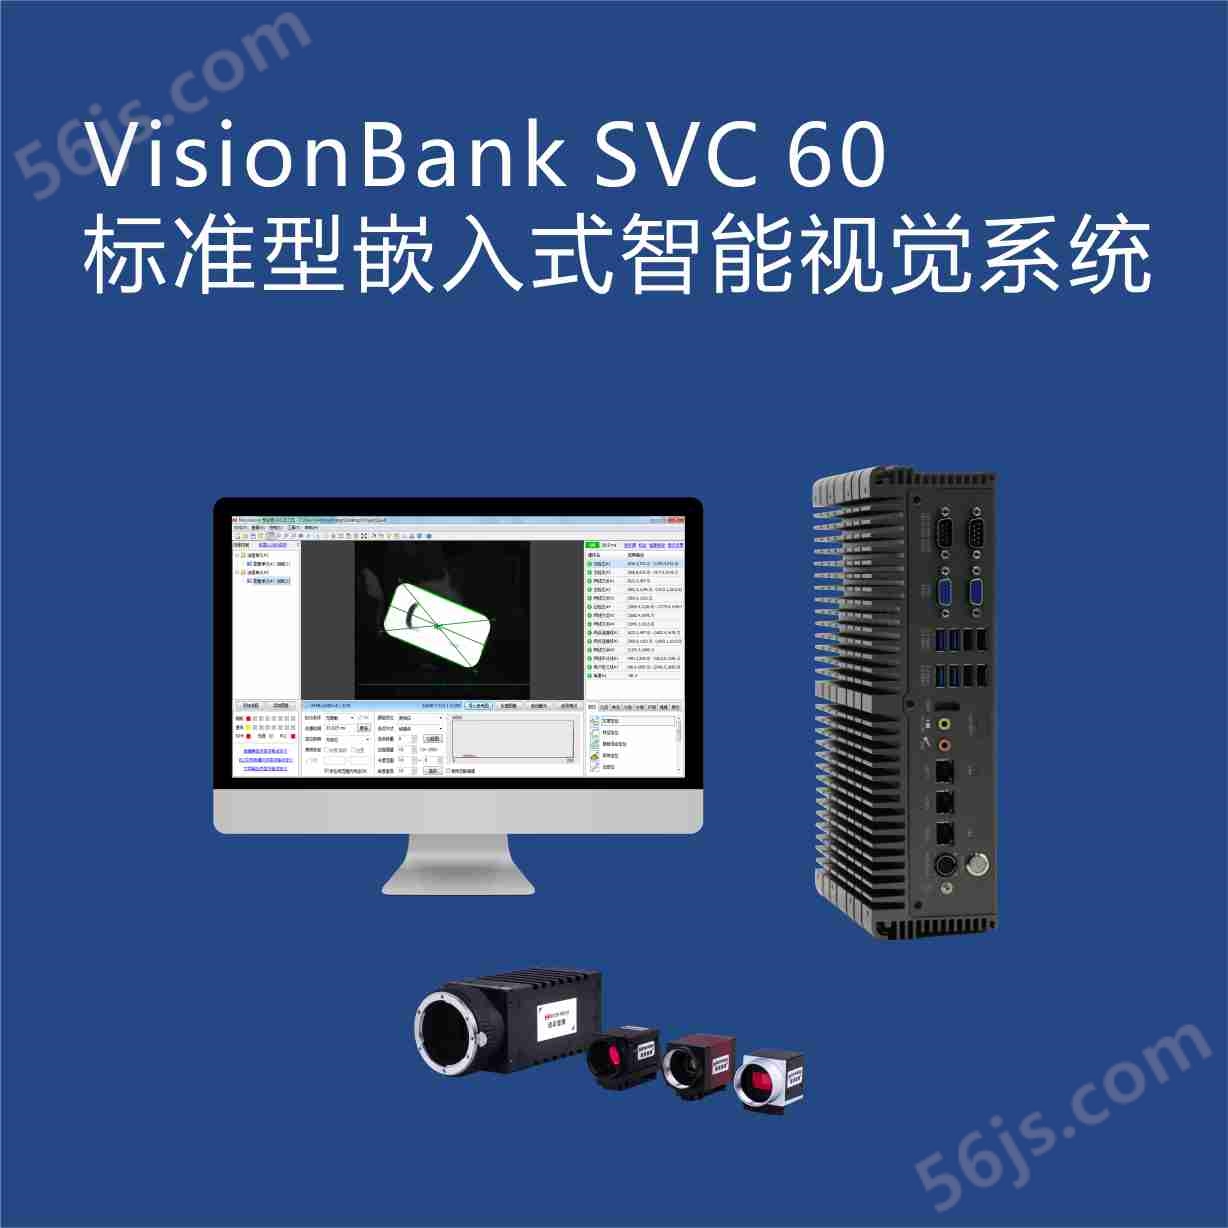 SVC60 标准型智能机器视觉系统